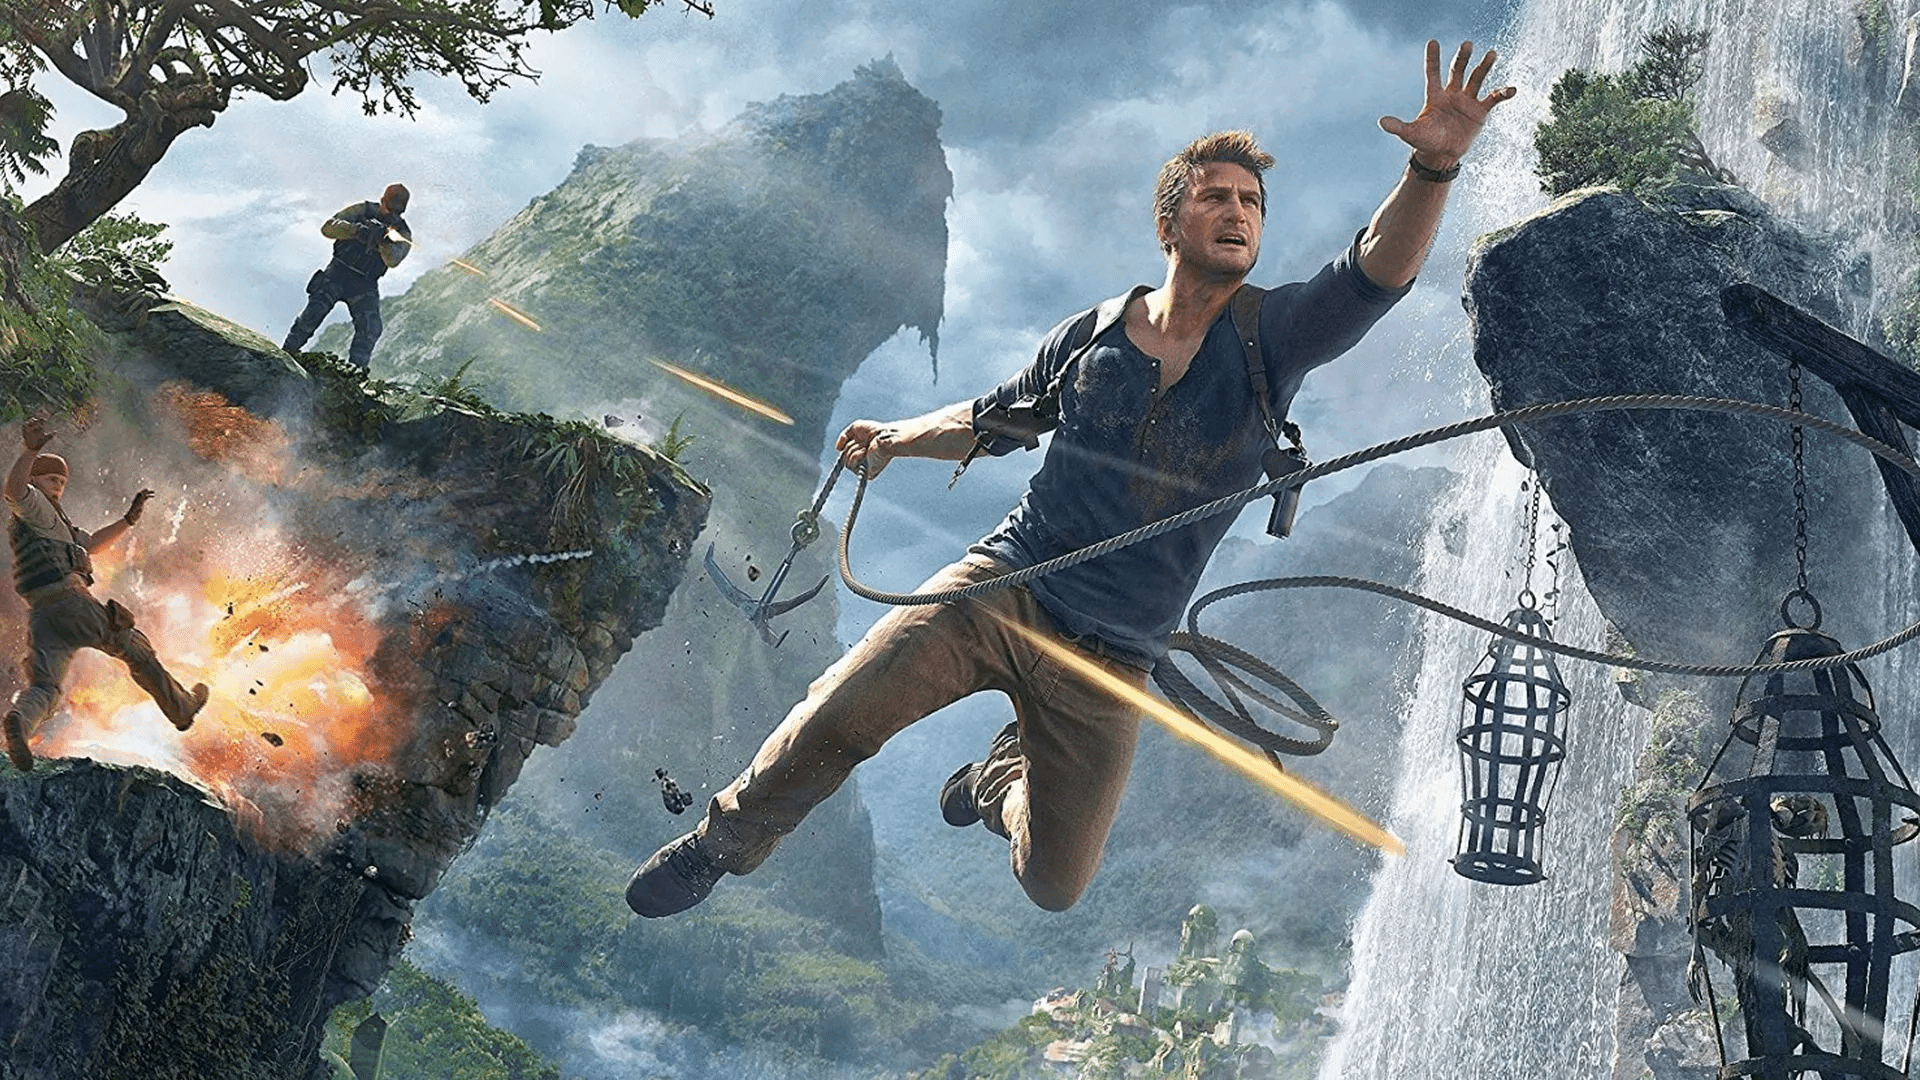 Sony confirma que filme Uncharted terá várias sequências nos cinemas